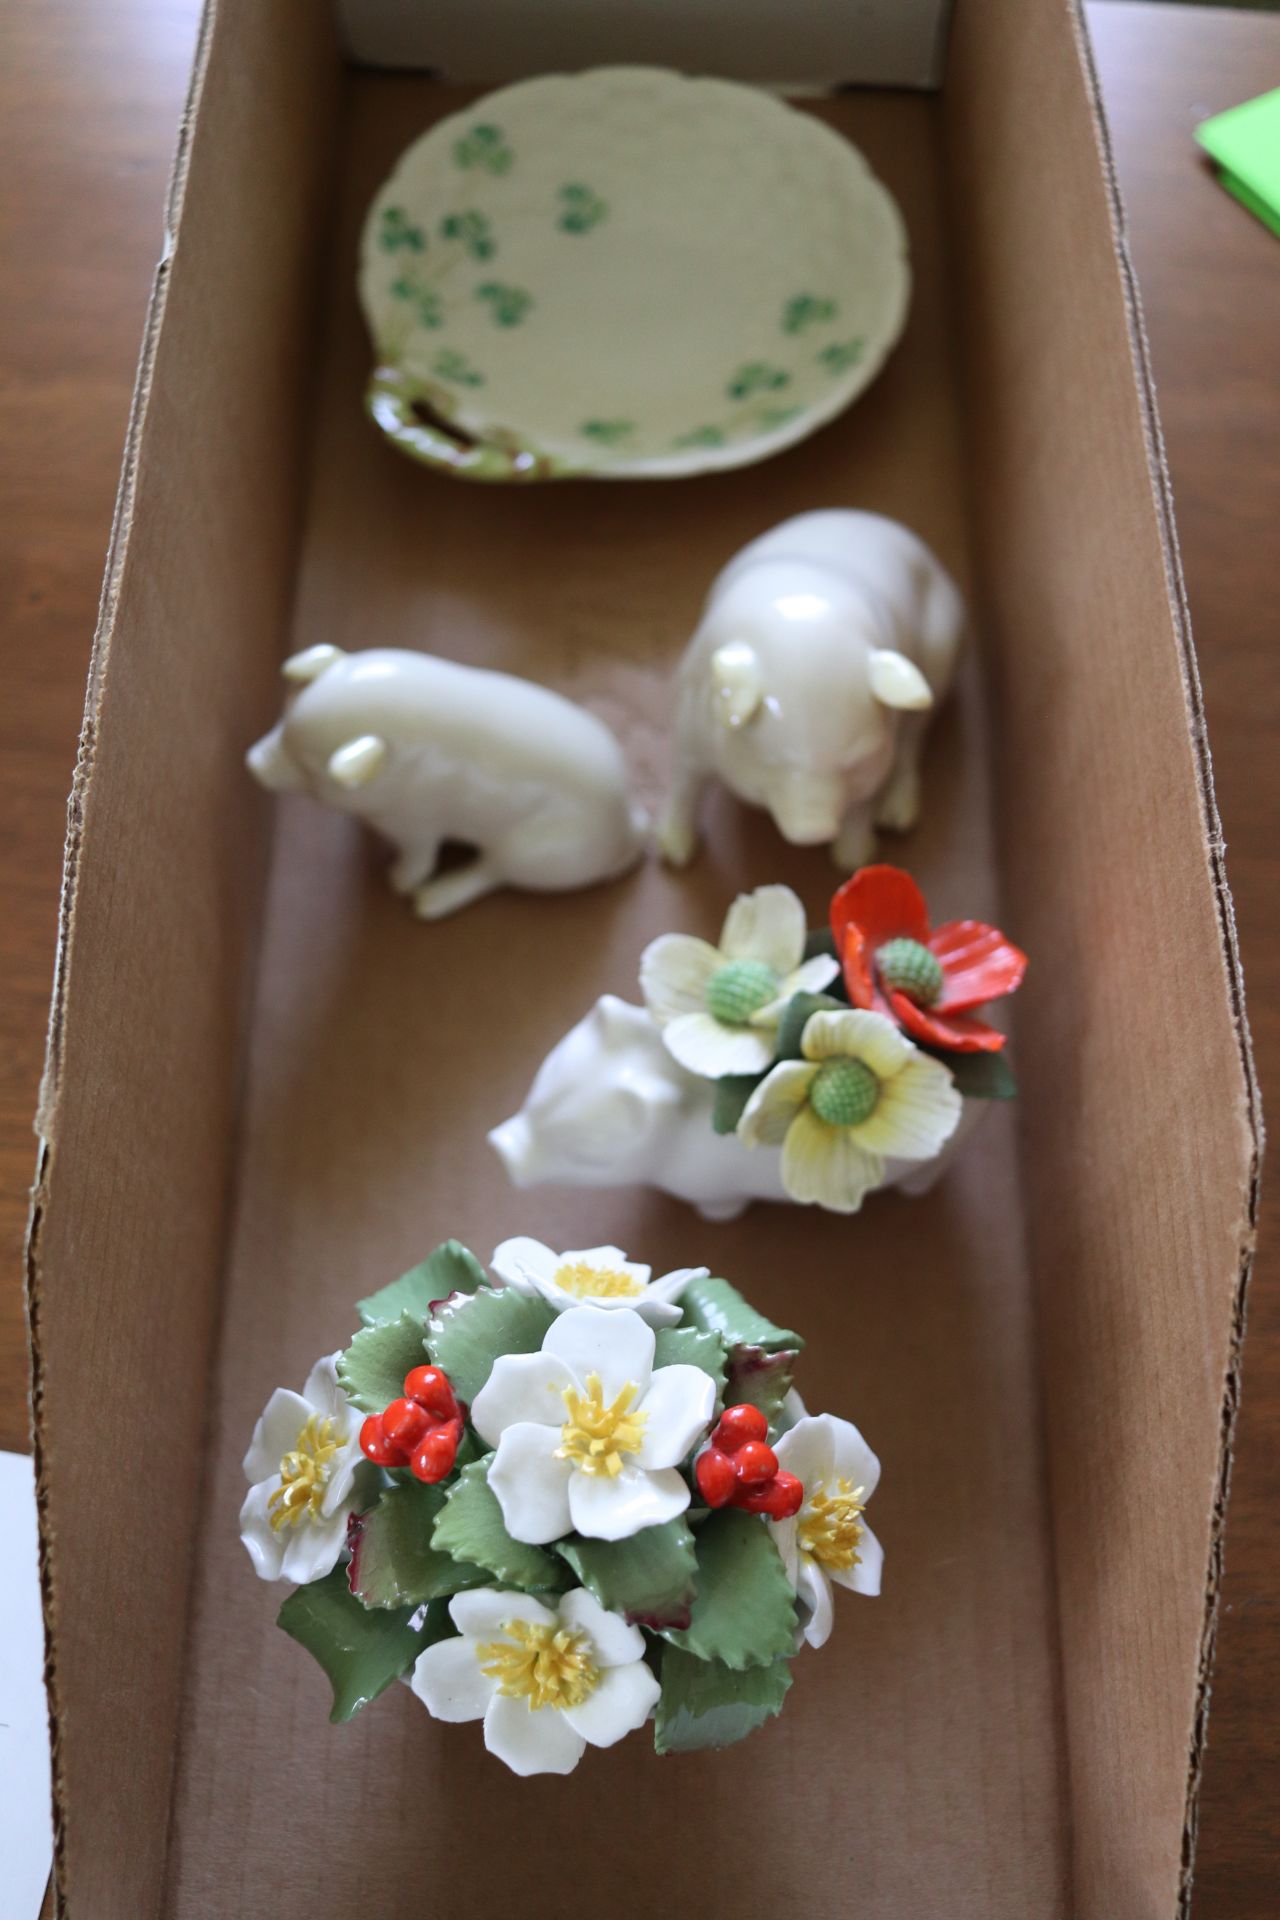 Aynsley pair of flowers, porcelain pigs by Belleek, and a dish by Belleek